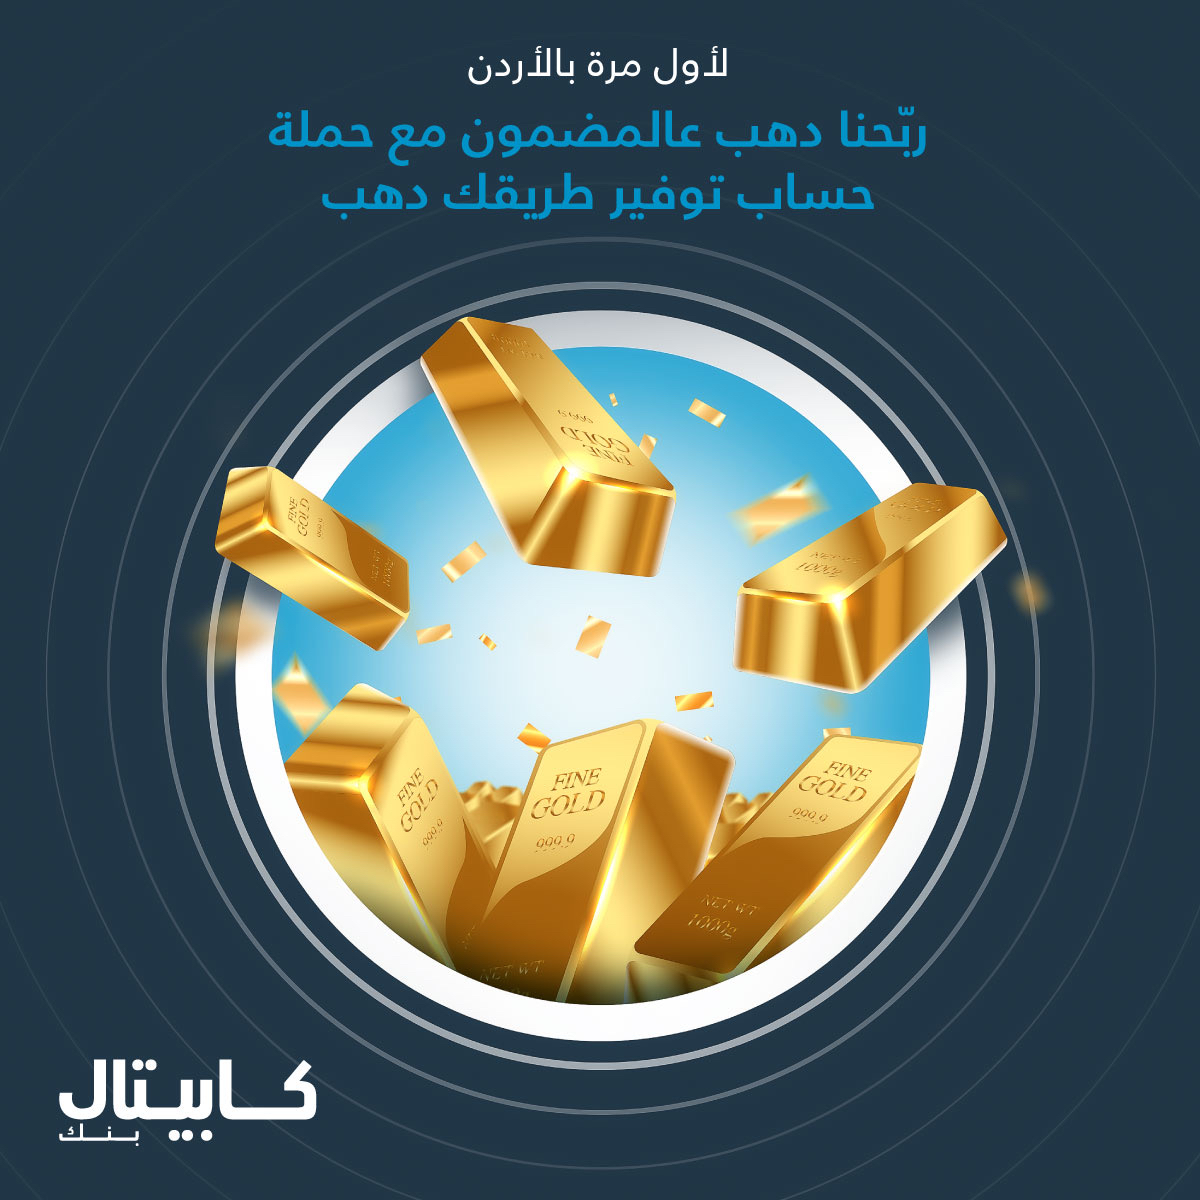 كابيتال بنك يعلن أسماء الفائزين بالذهب ضمن  حملة حساب التوفير " طريقك دهب"  